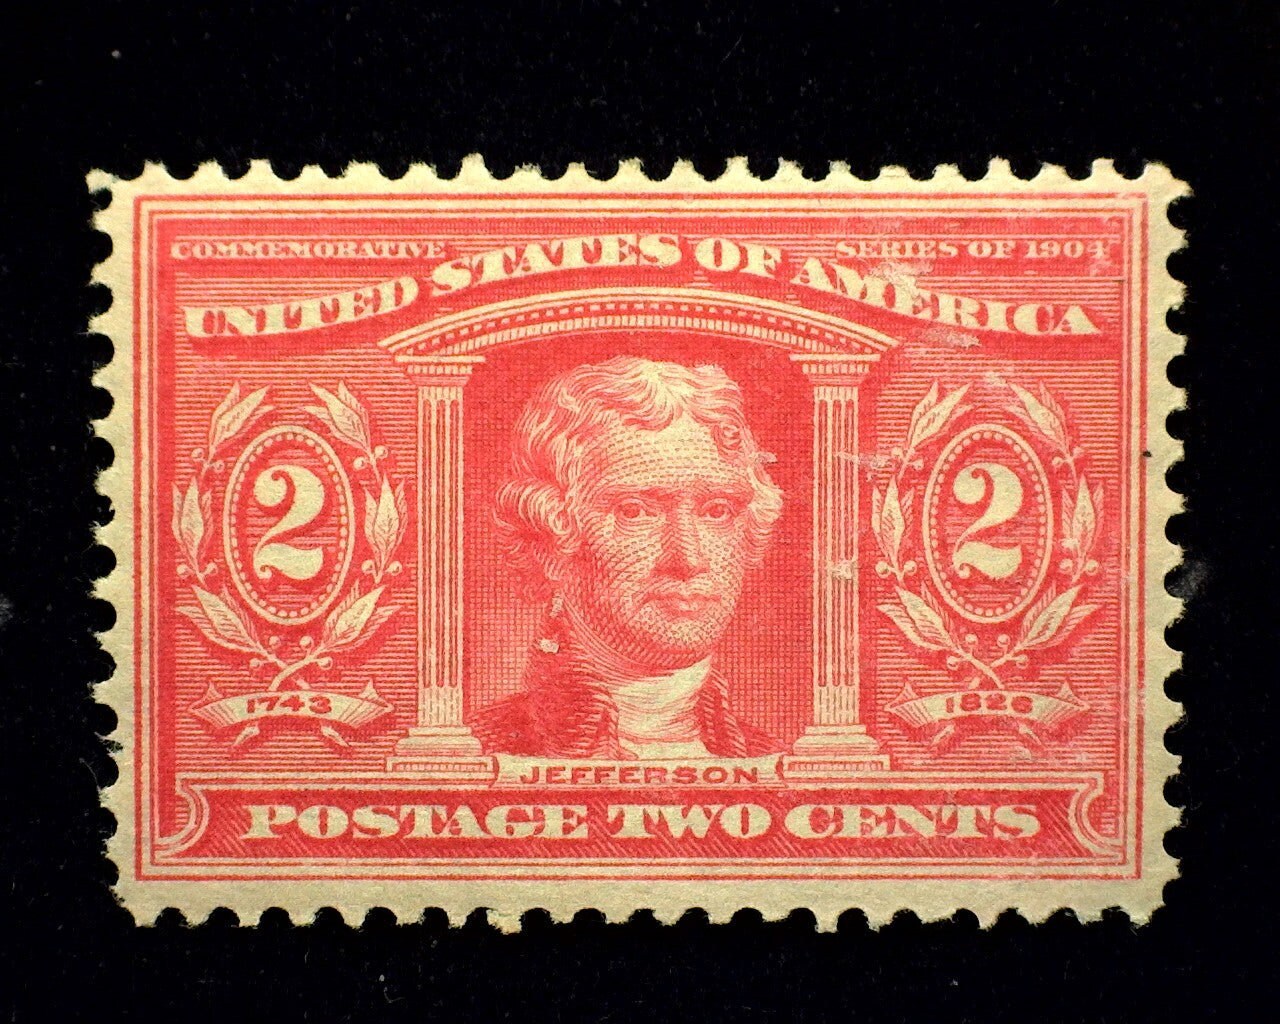 Louisiana Statehood 4c Unused Vintage 1962 Postage Stamps for 